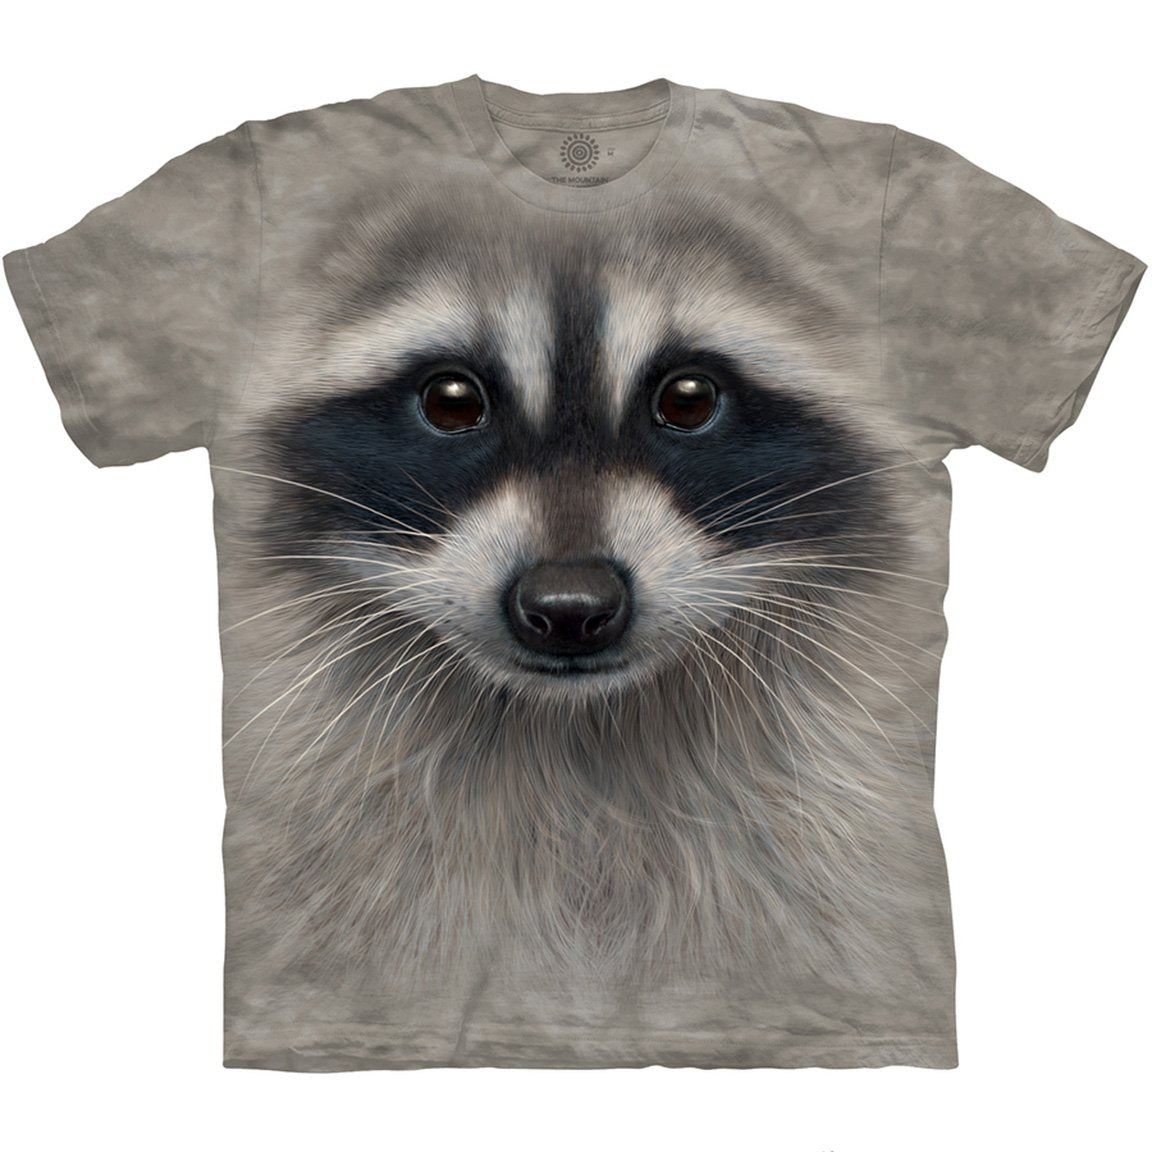 The Mountain Raccoon Face - T-Shirt